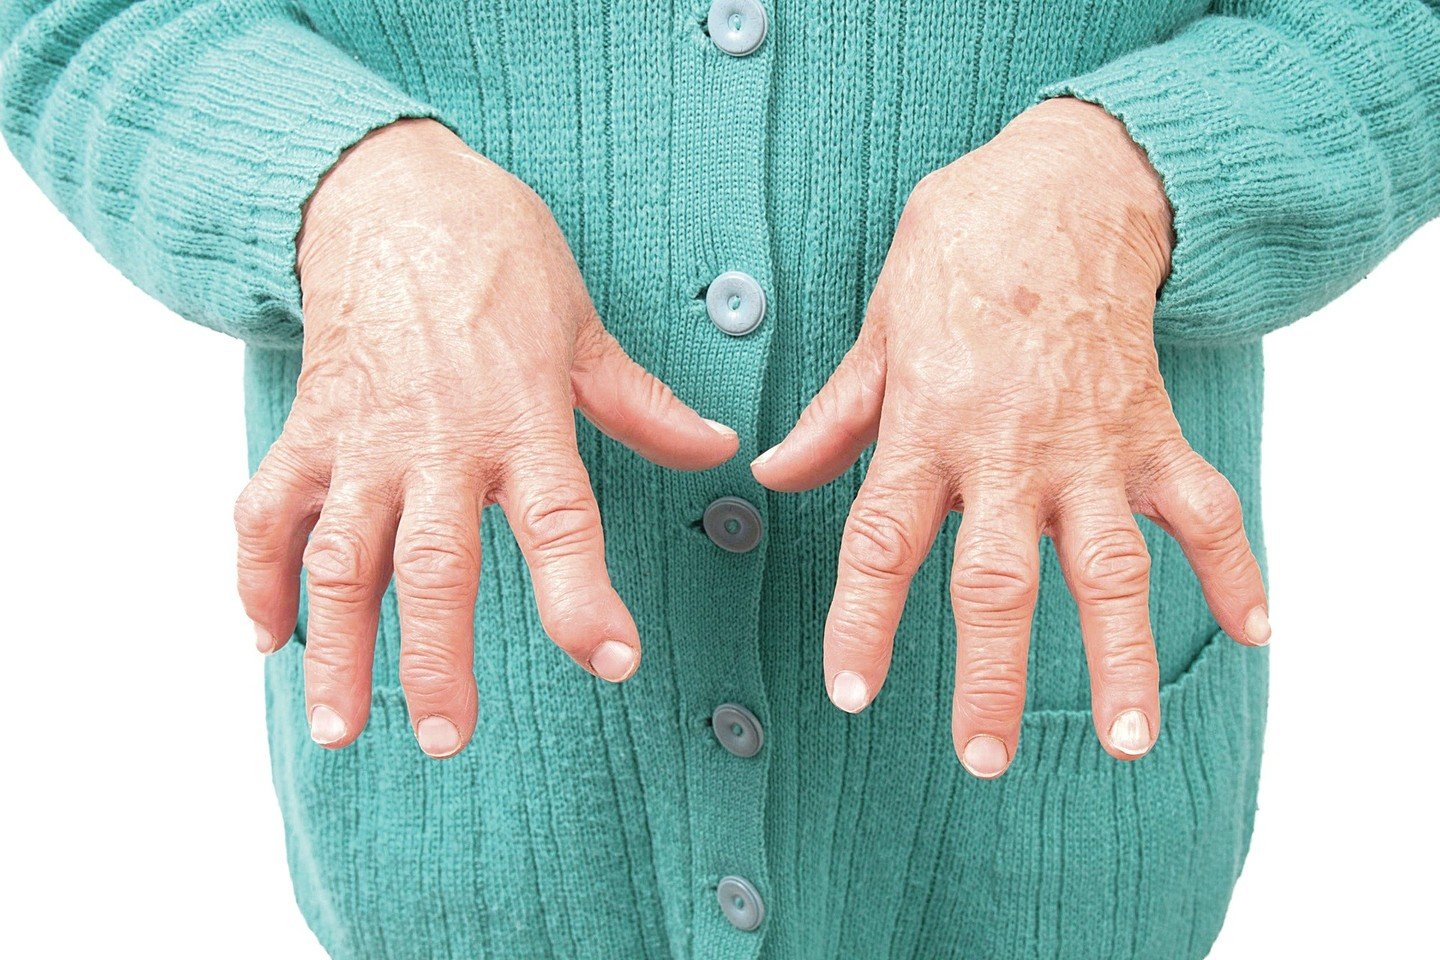 artritas rankos gydymo metodai